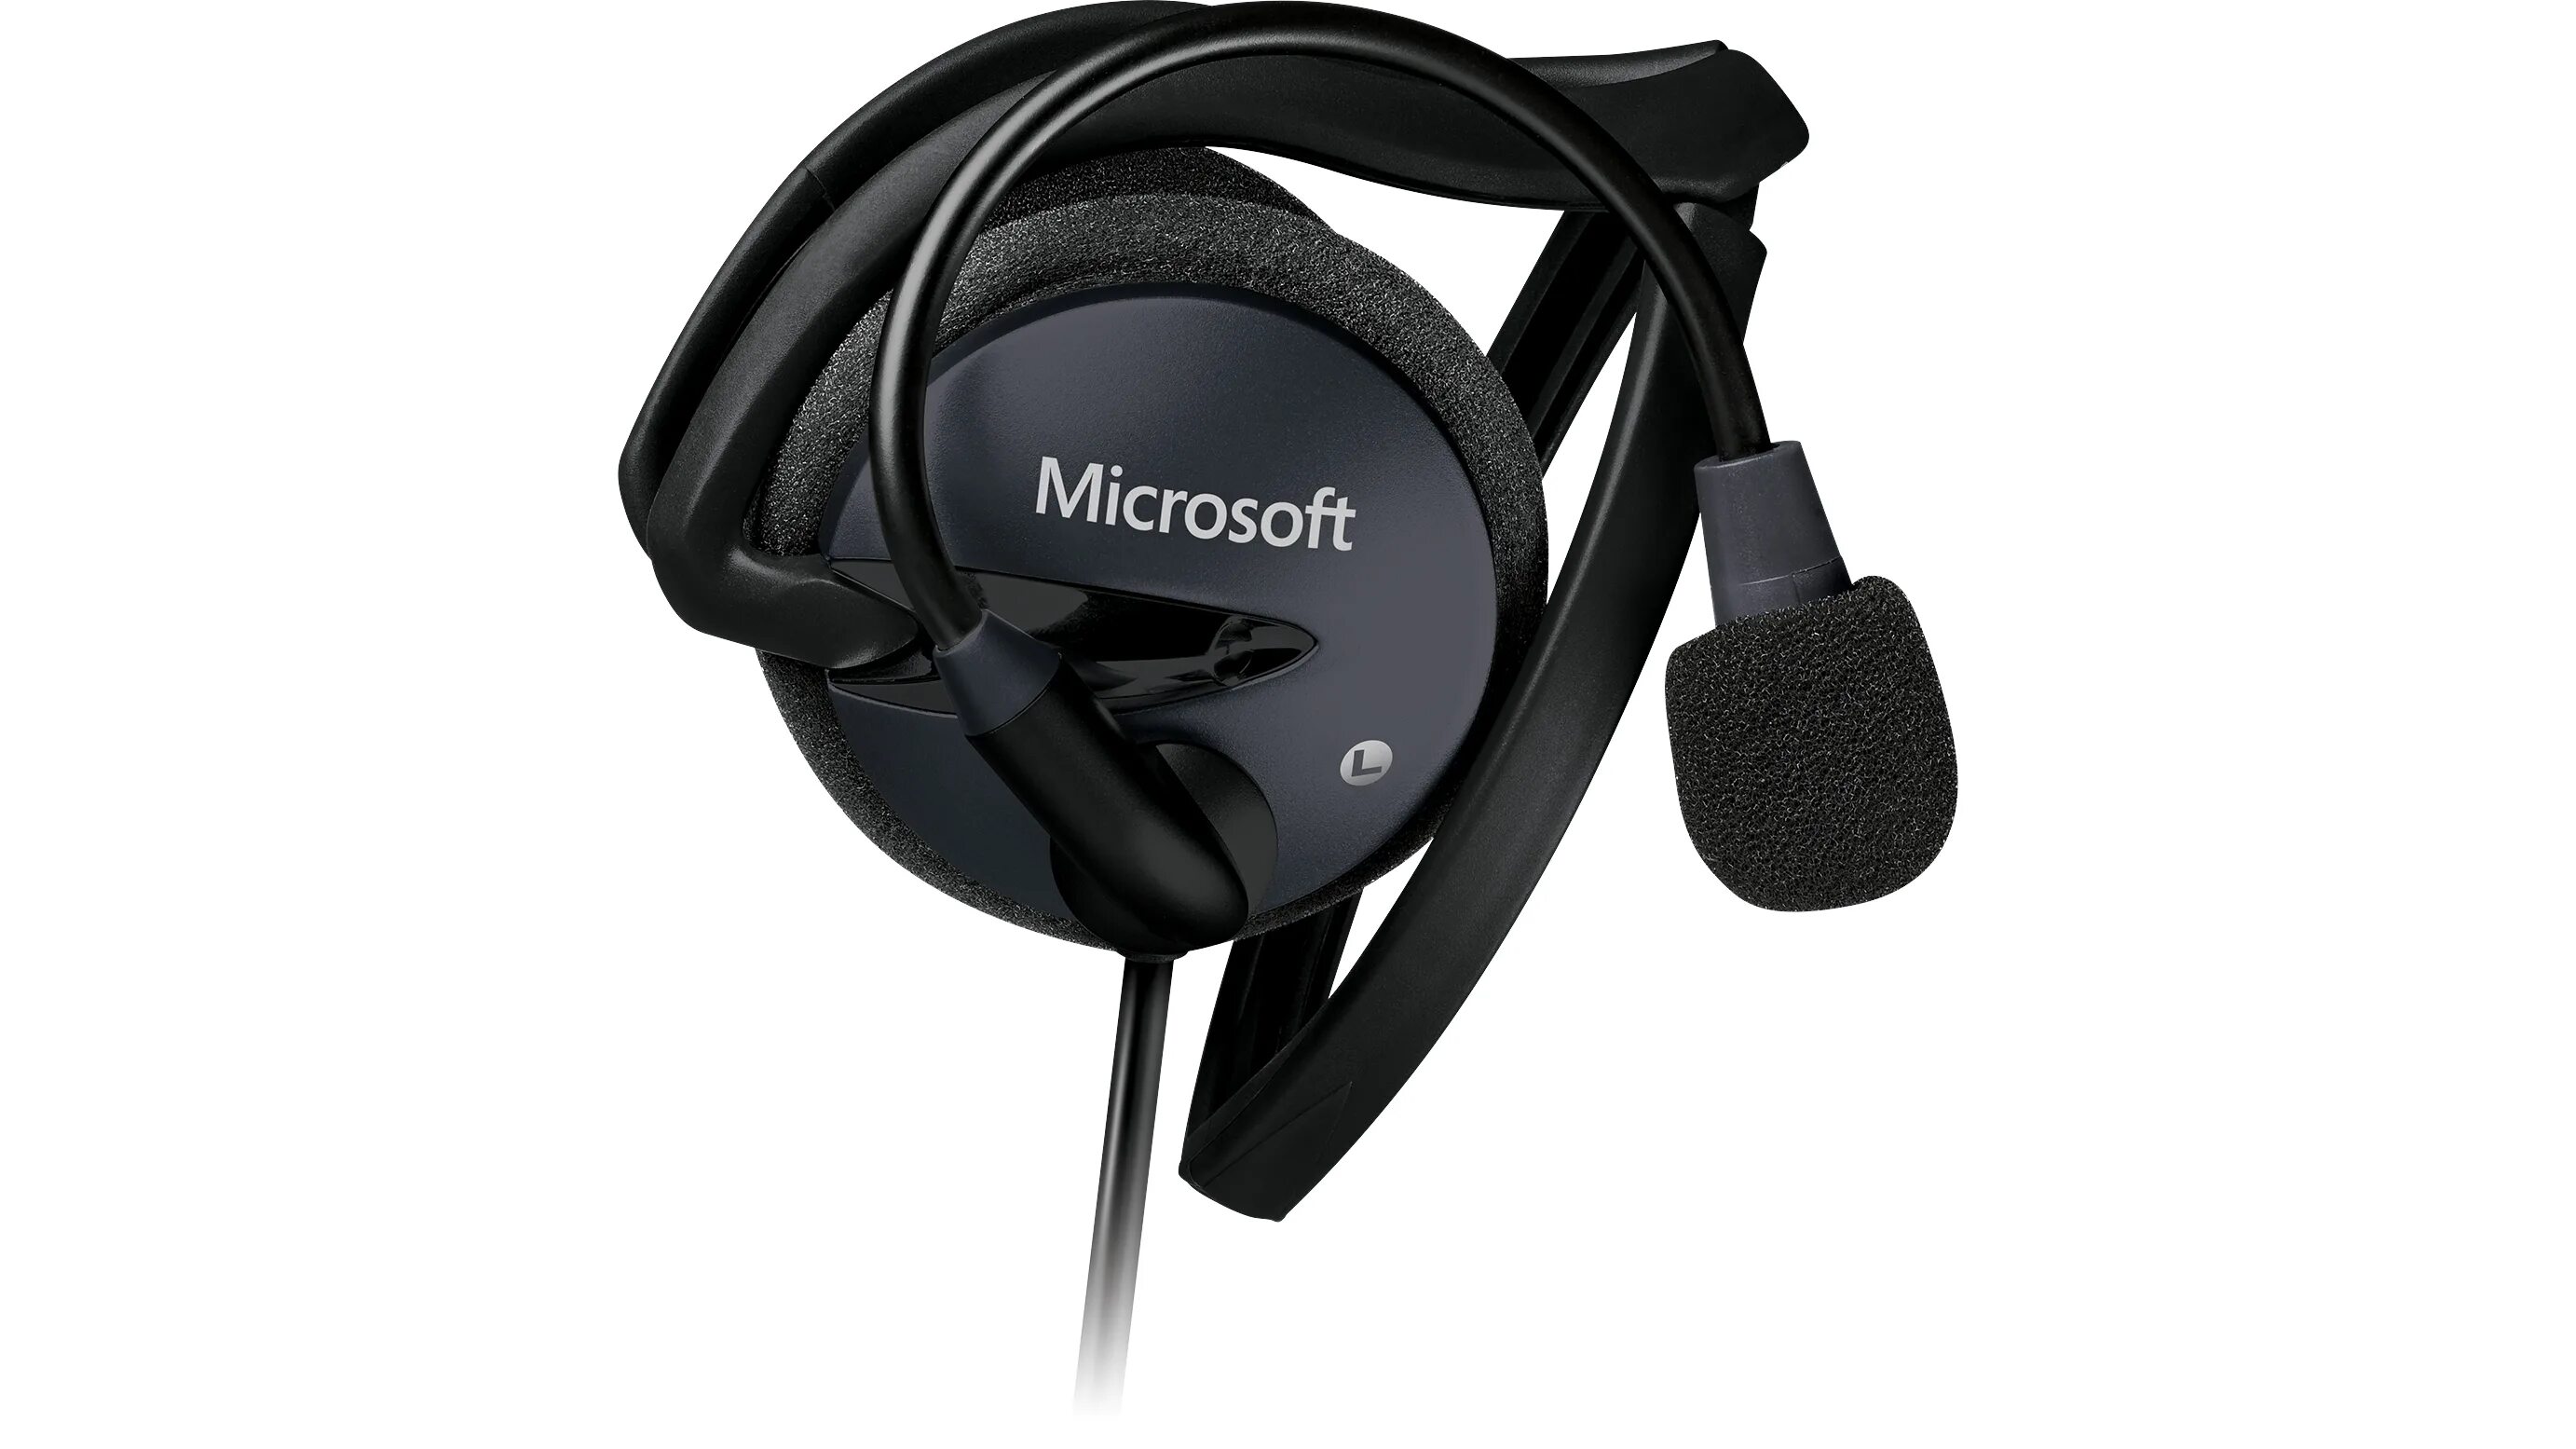 Гарнитура Microsoft LIFECHAT LX-6000. Microsoft LIFECHAT LX-3000. Microsoft LIFECHAT LX-3000 наушники+микрофон,. Microsoft LIFECHAT LX-2000. Microsoft headset